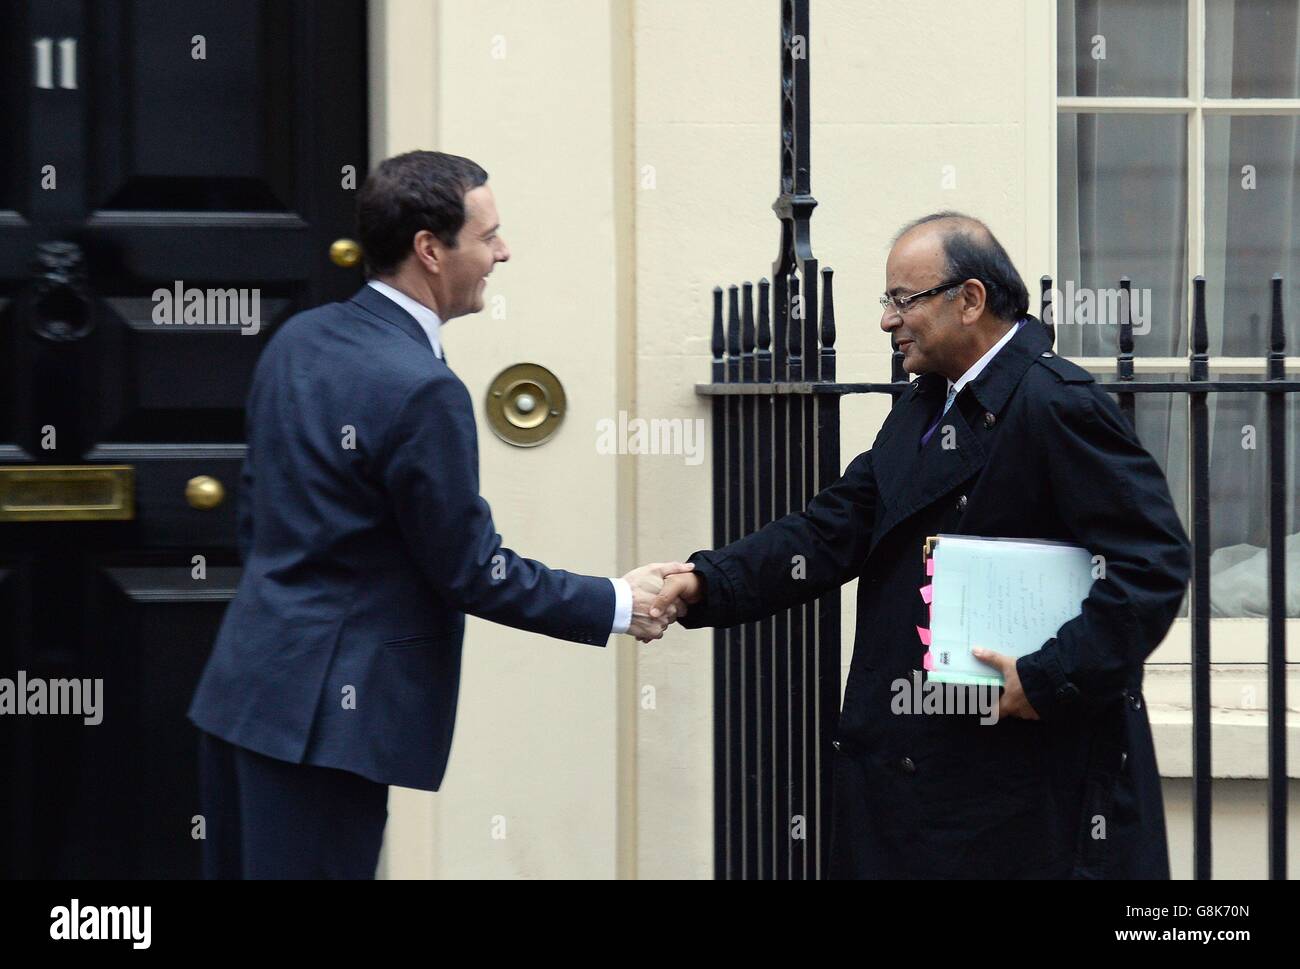 Il Cancelliere George Osborne accoglie con favore il Ministro delle finanze indiano, Arun Jaitley, a Downing Street, Londra, per l'ottavo dialogo economico e finanziario tra Regno Unito e India. Foto Stock